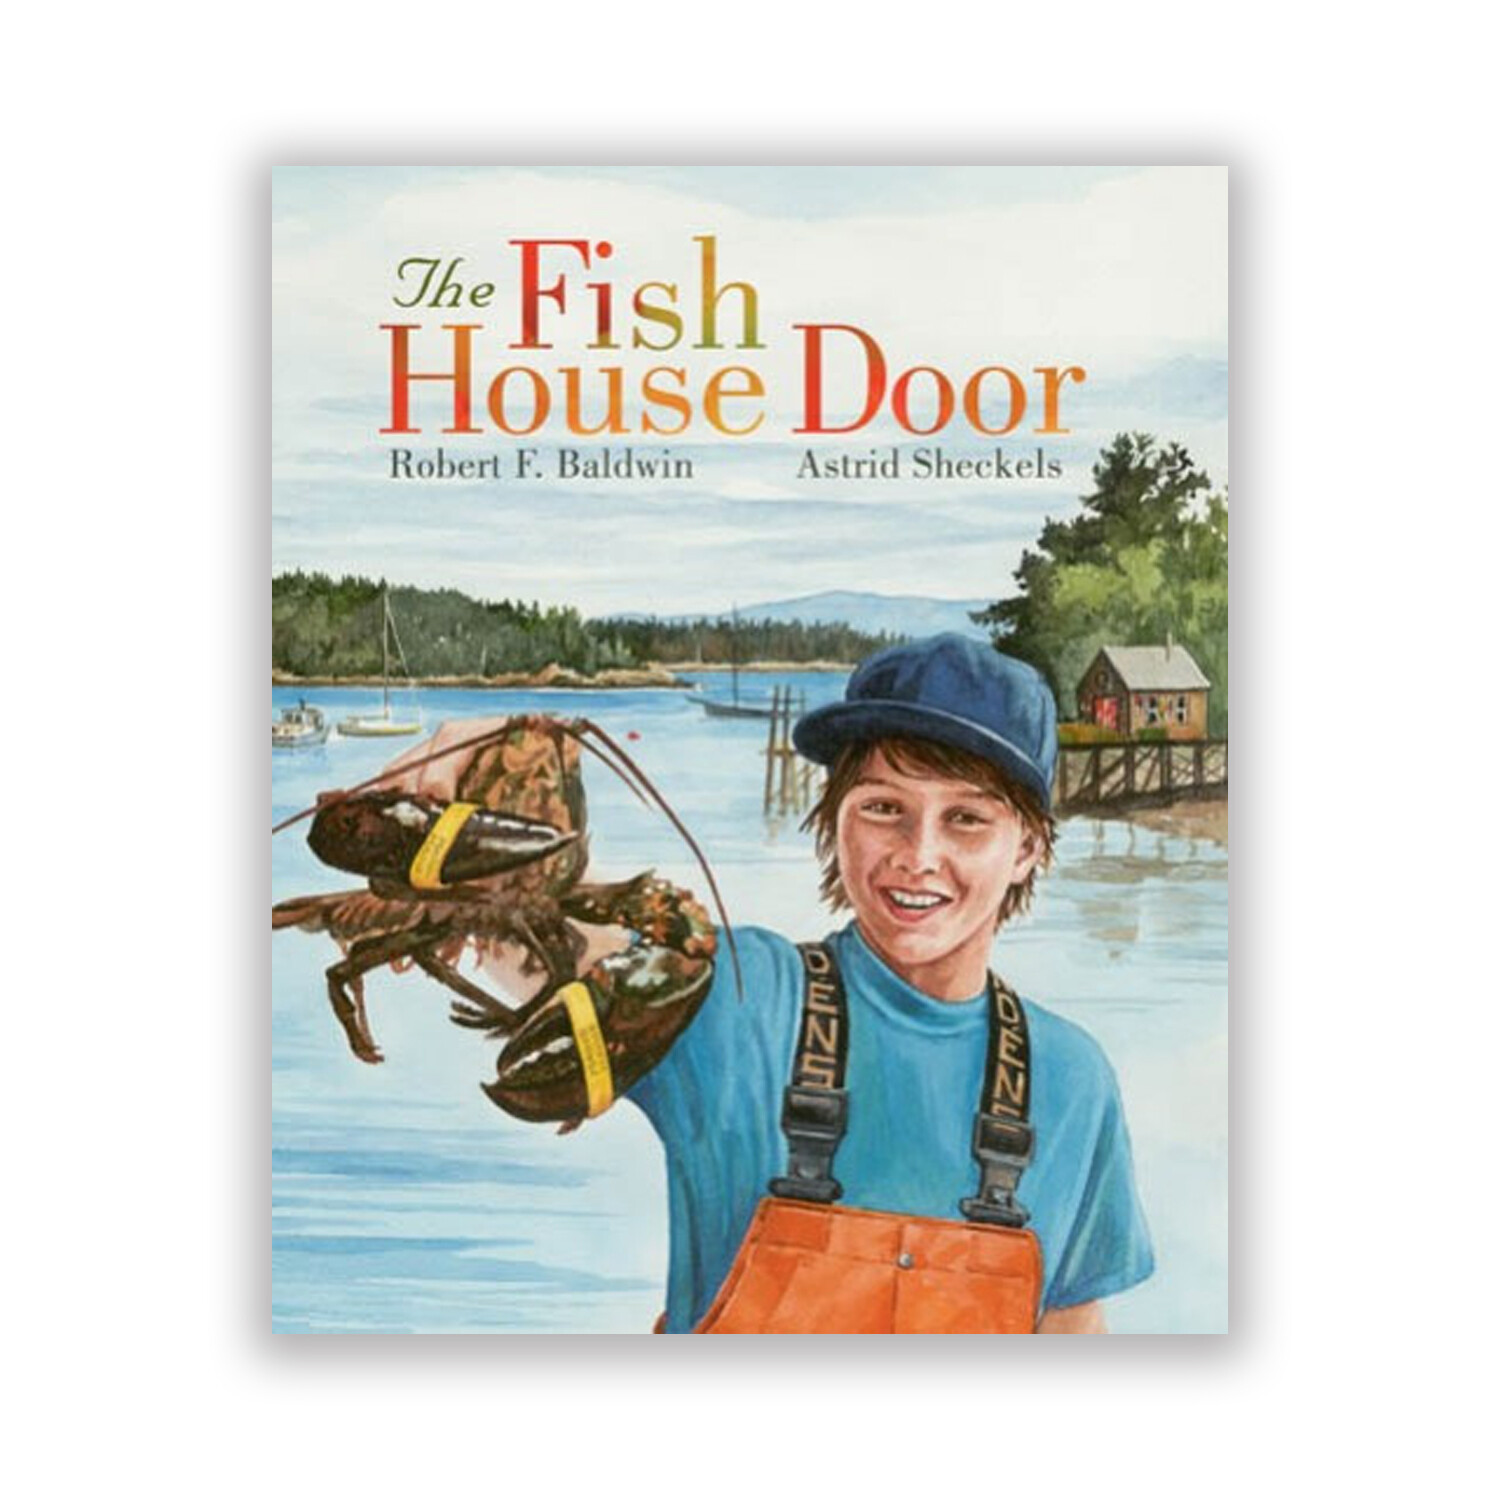 The Fish House Door